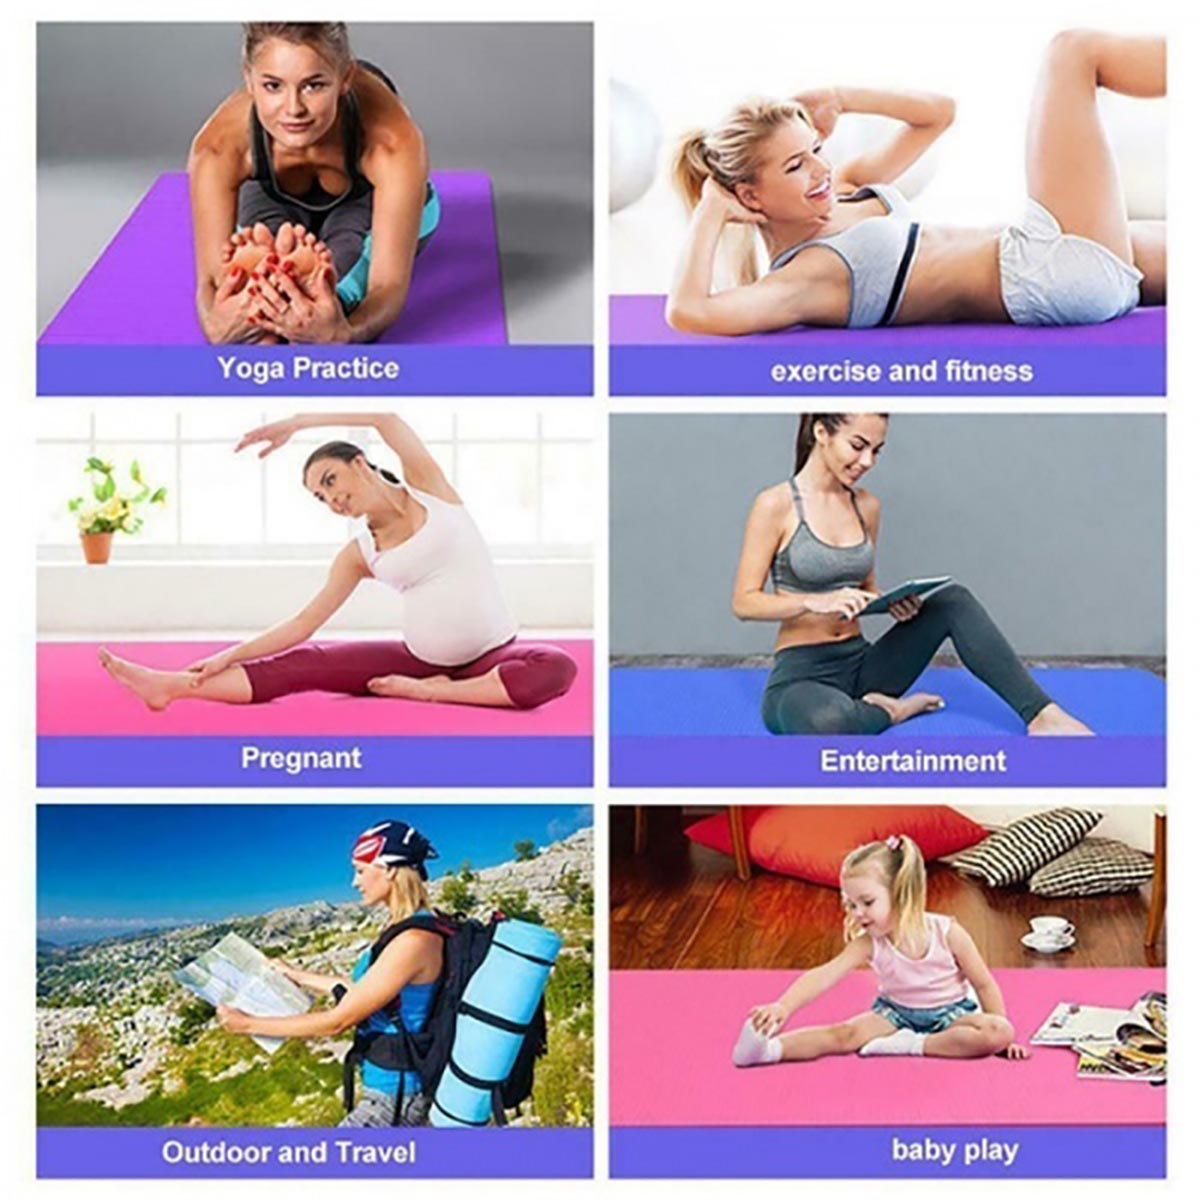 Yoga-Mats-Anti-Slip-Exercise-Fitness-Meditation-Pilate-Pads-Exerciser-Home-Gym-1715227-4